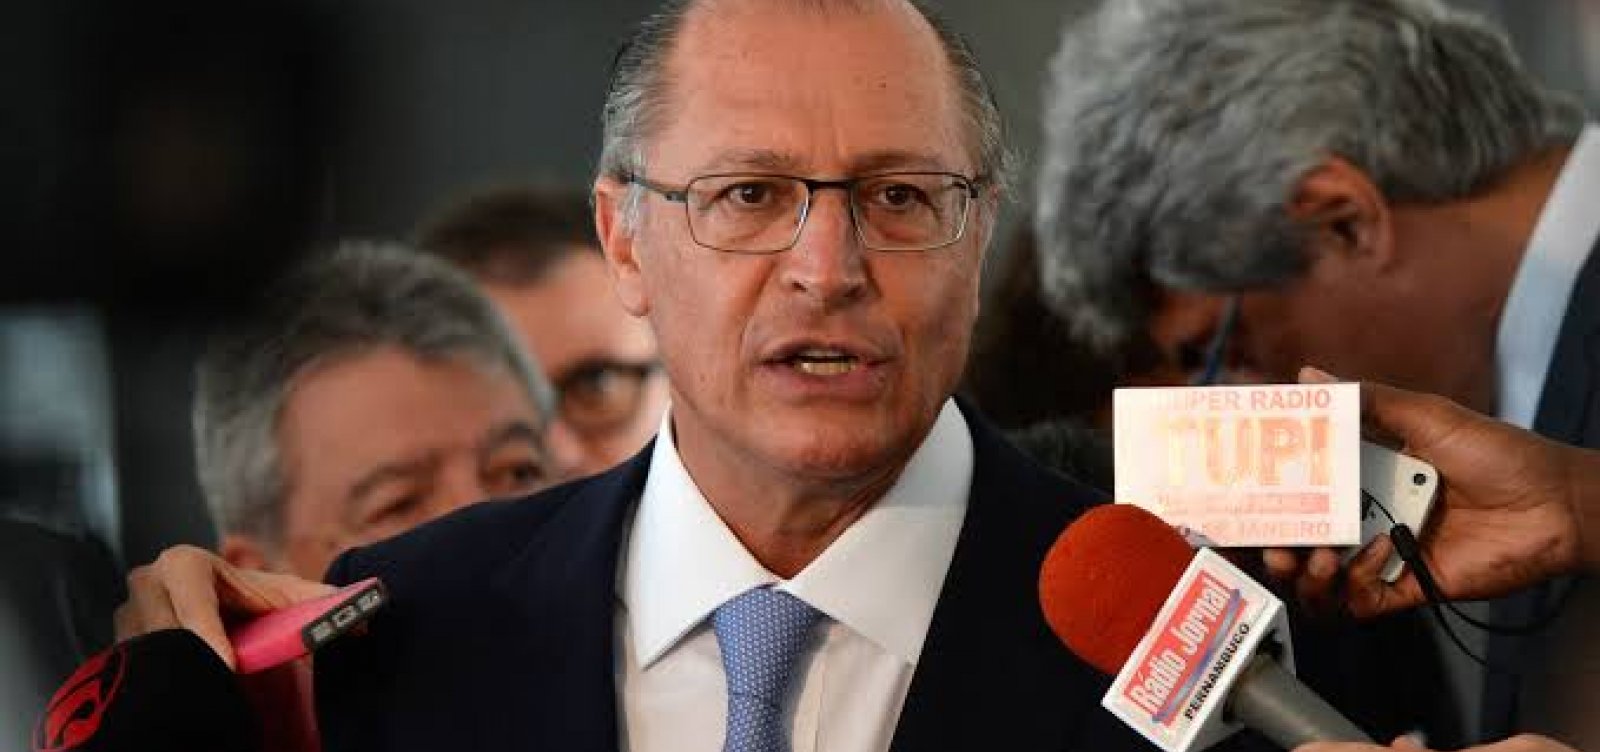 Após encontro com Solidariedade, Alckmin deve definir novo partido em março